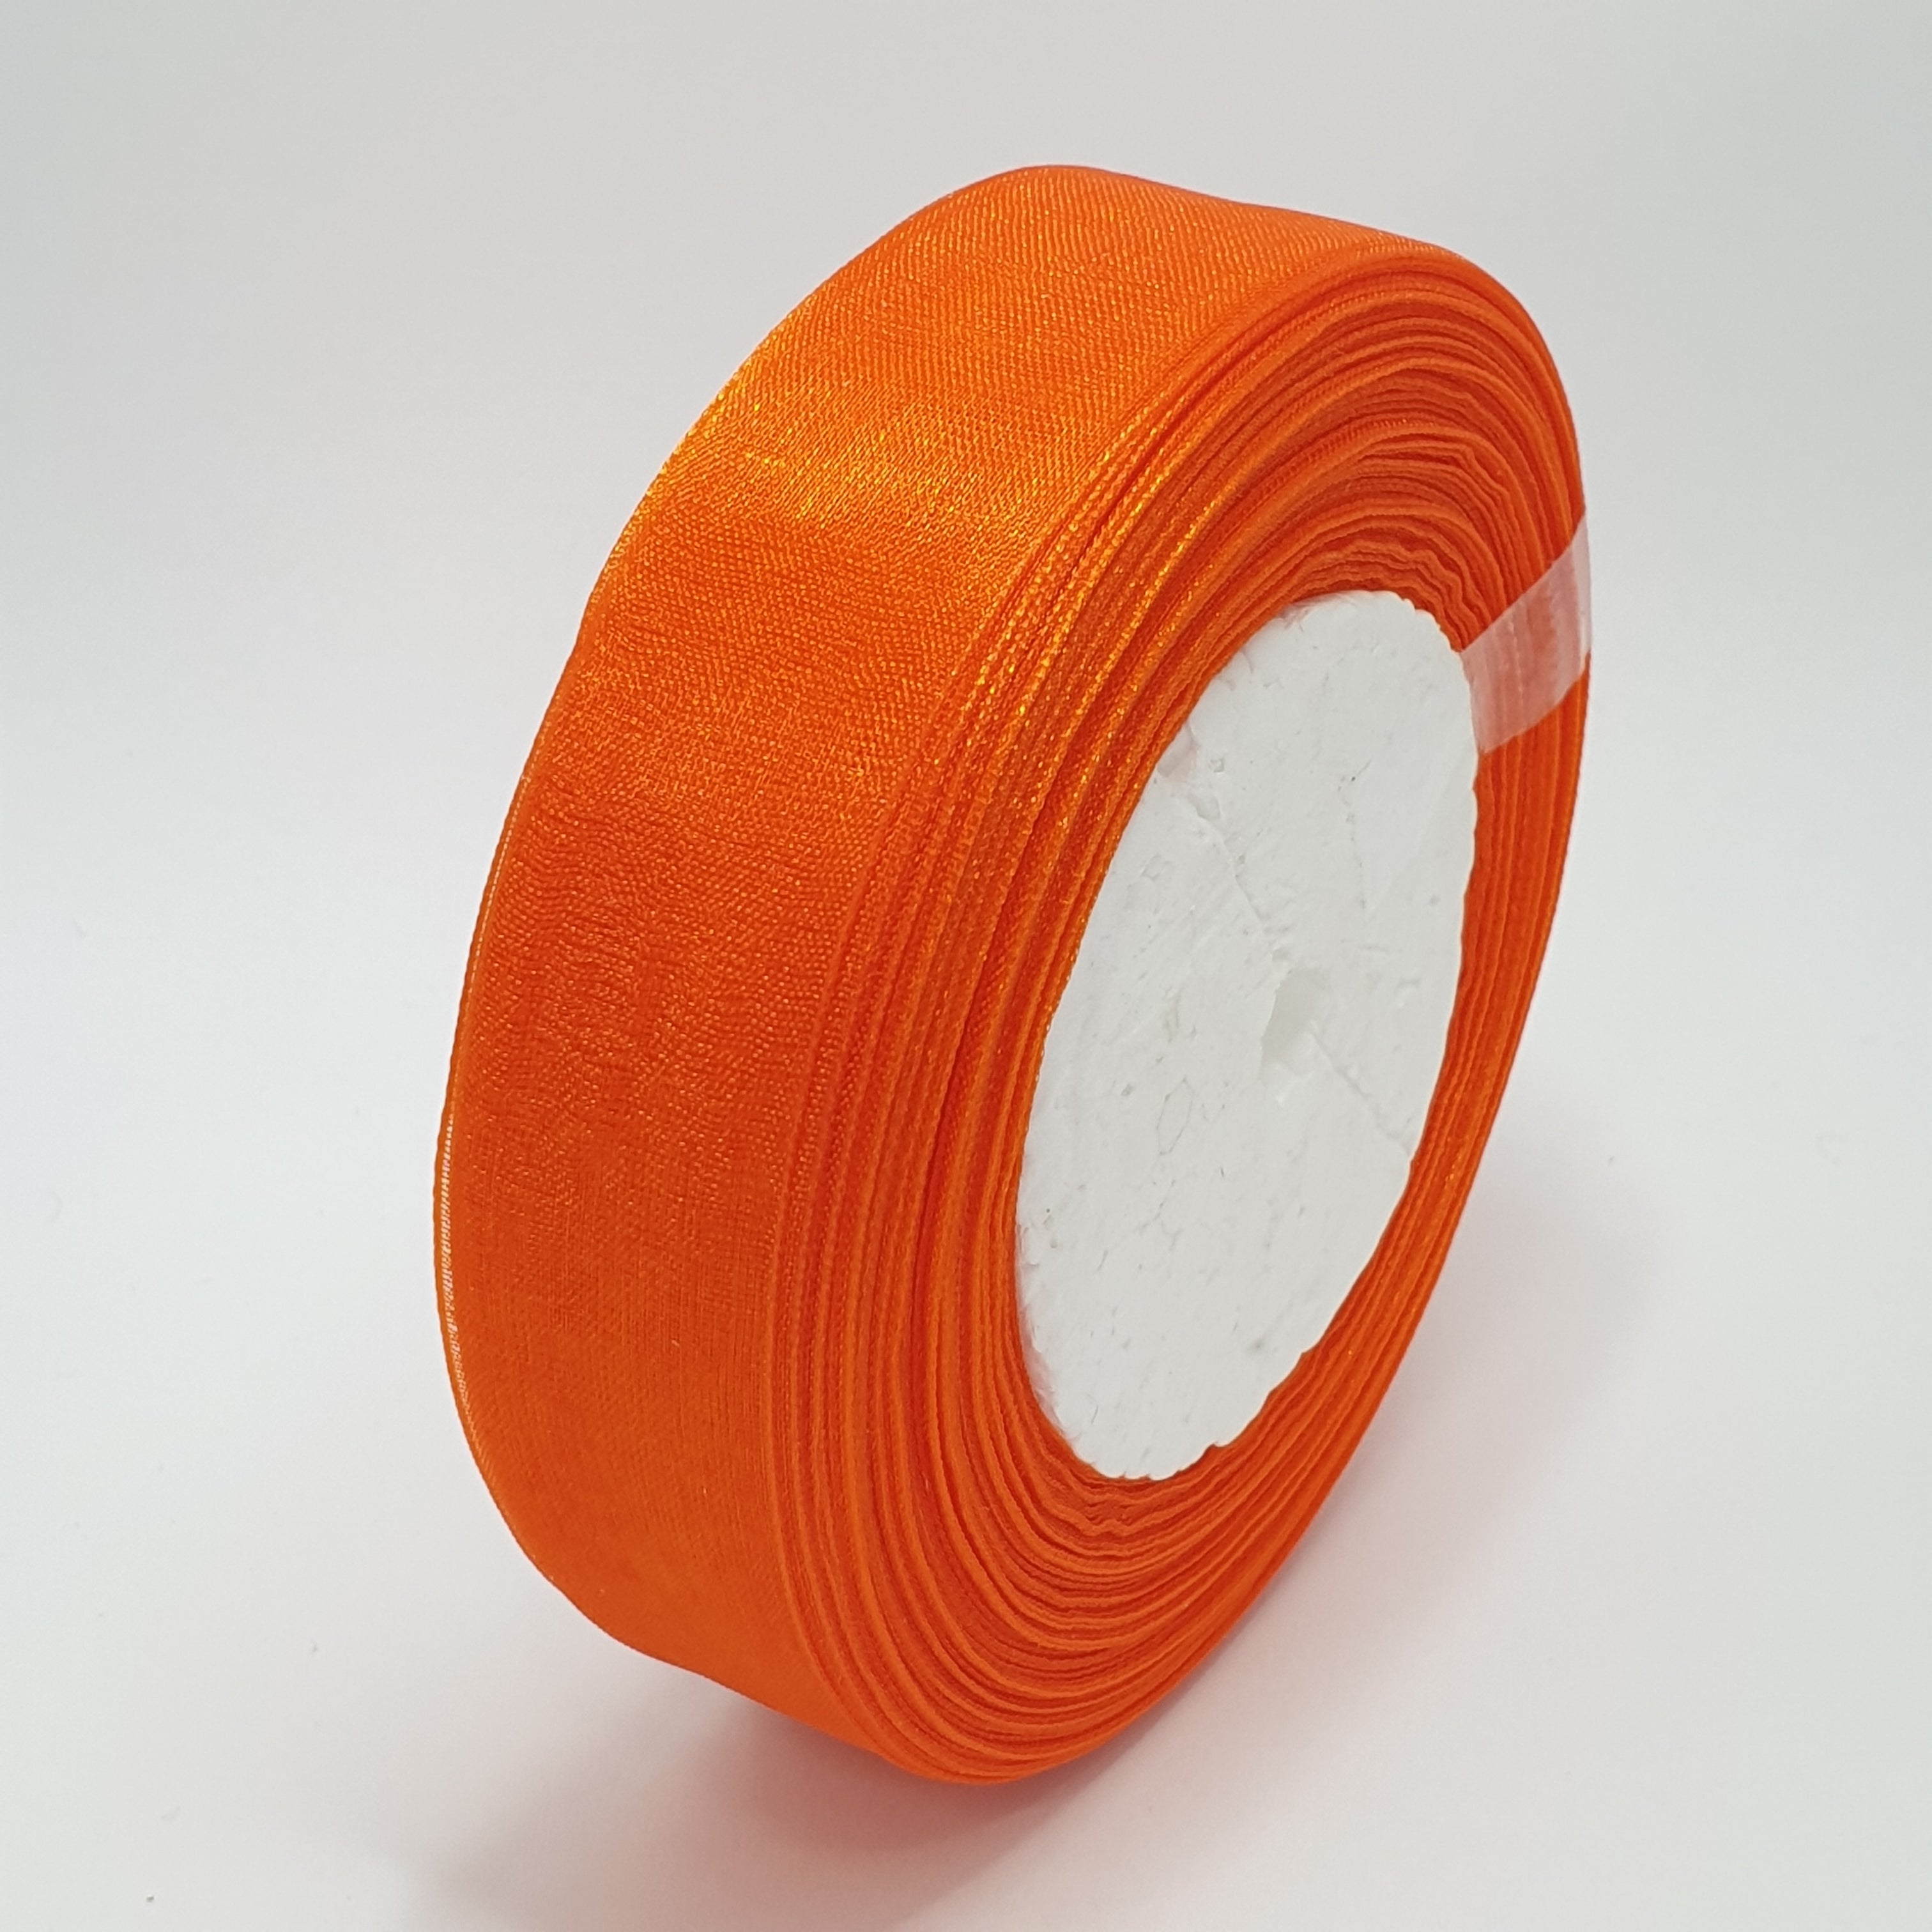 MajorCrafts 25mm 45metres Sheer Organza Fabric Ribbon Roll Orange Shade R1025